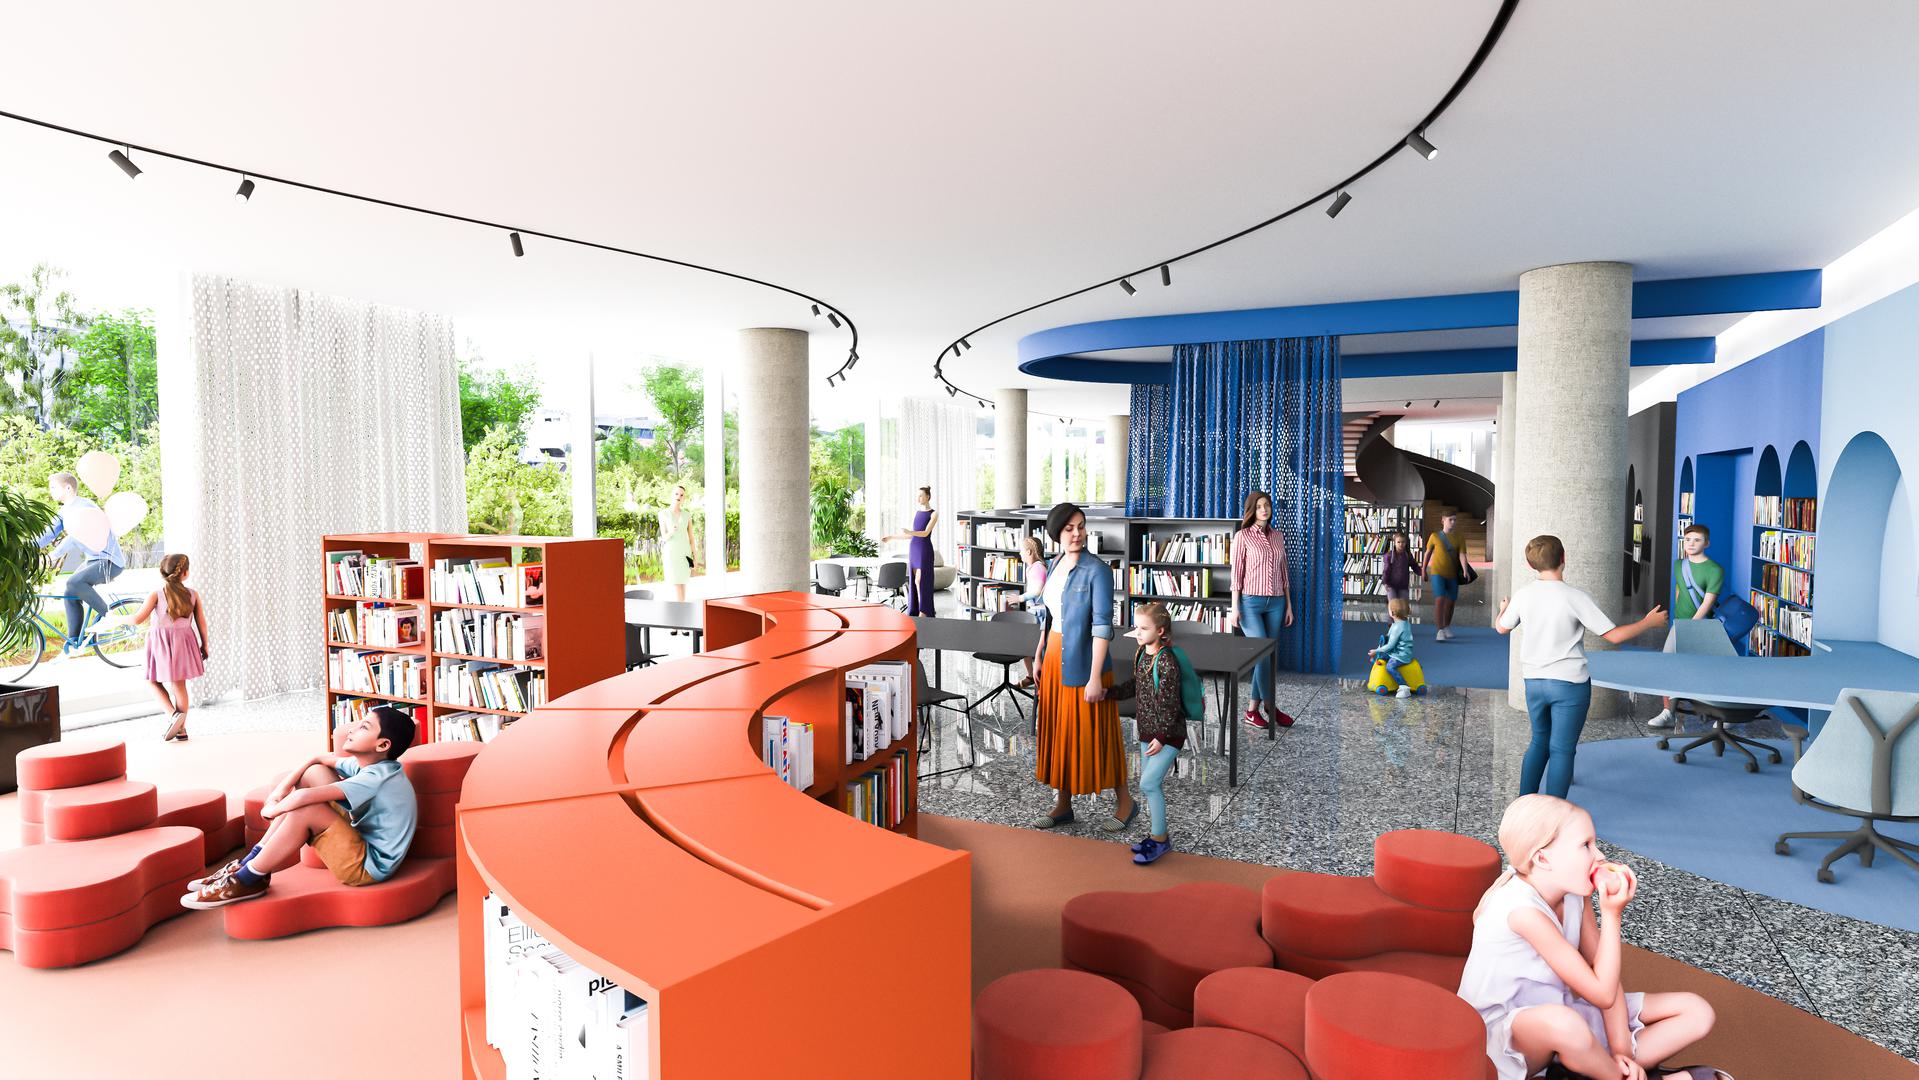 U gradskoj upravi za sljedeći tjedan najavljen je početak rekonstrukcije Paromlina. Projekt je vrijedan 85 milijuna eura, a rok je dvije godine. Predstavljanje su i nove vizualizacije. Na fotografiji je dječji odjel buduće centralne gradske knjižnice.